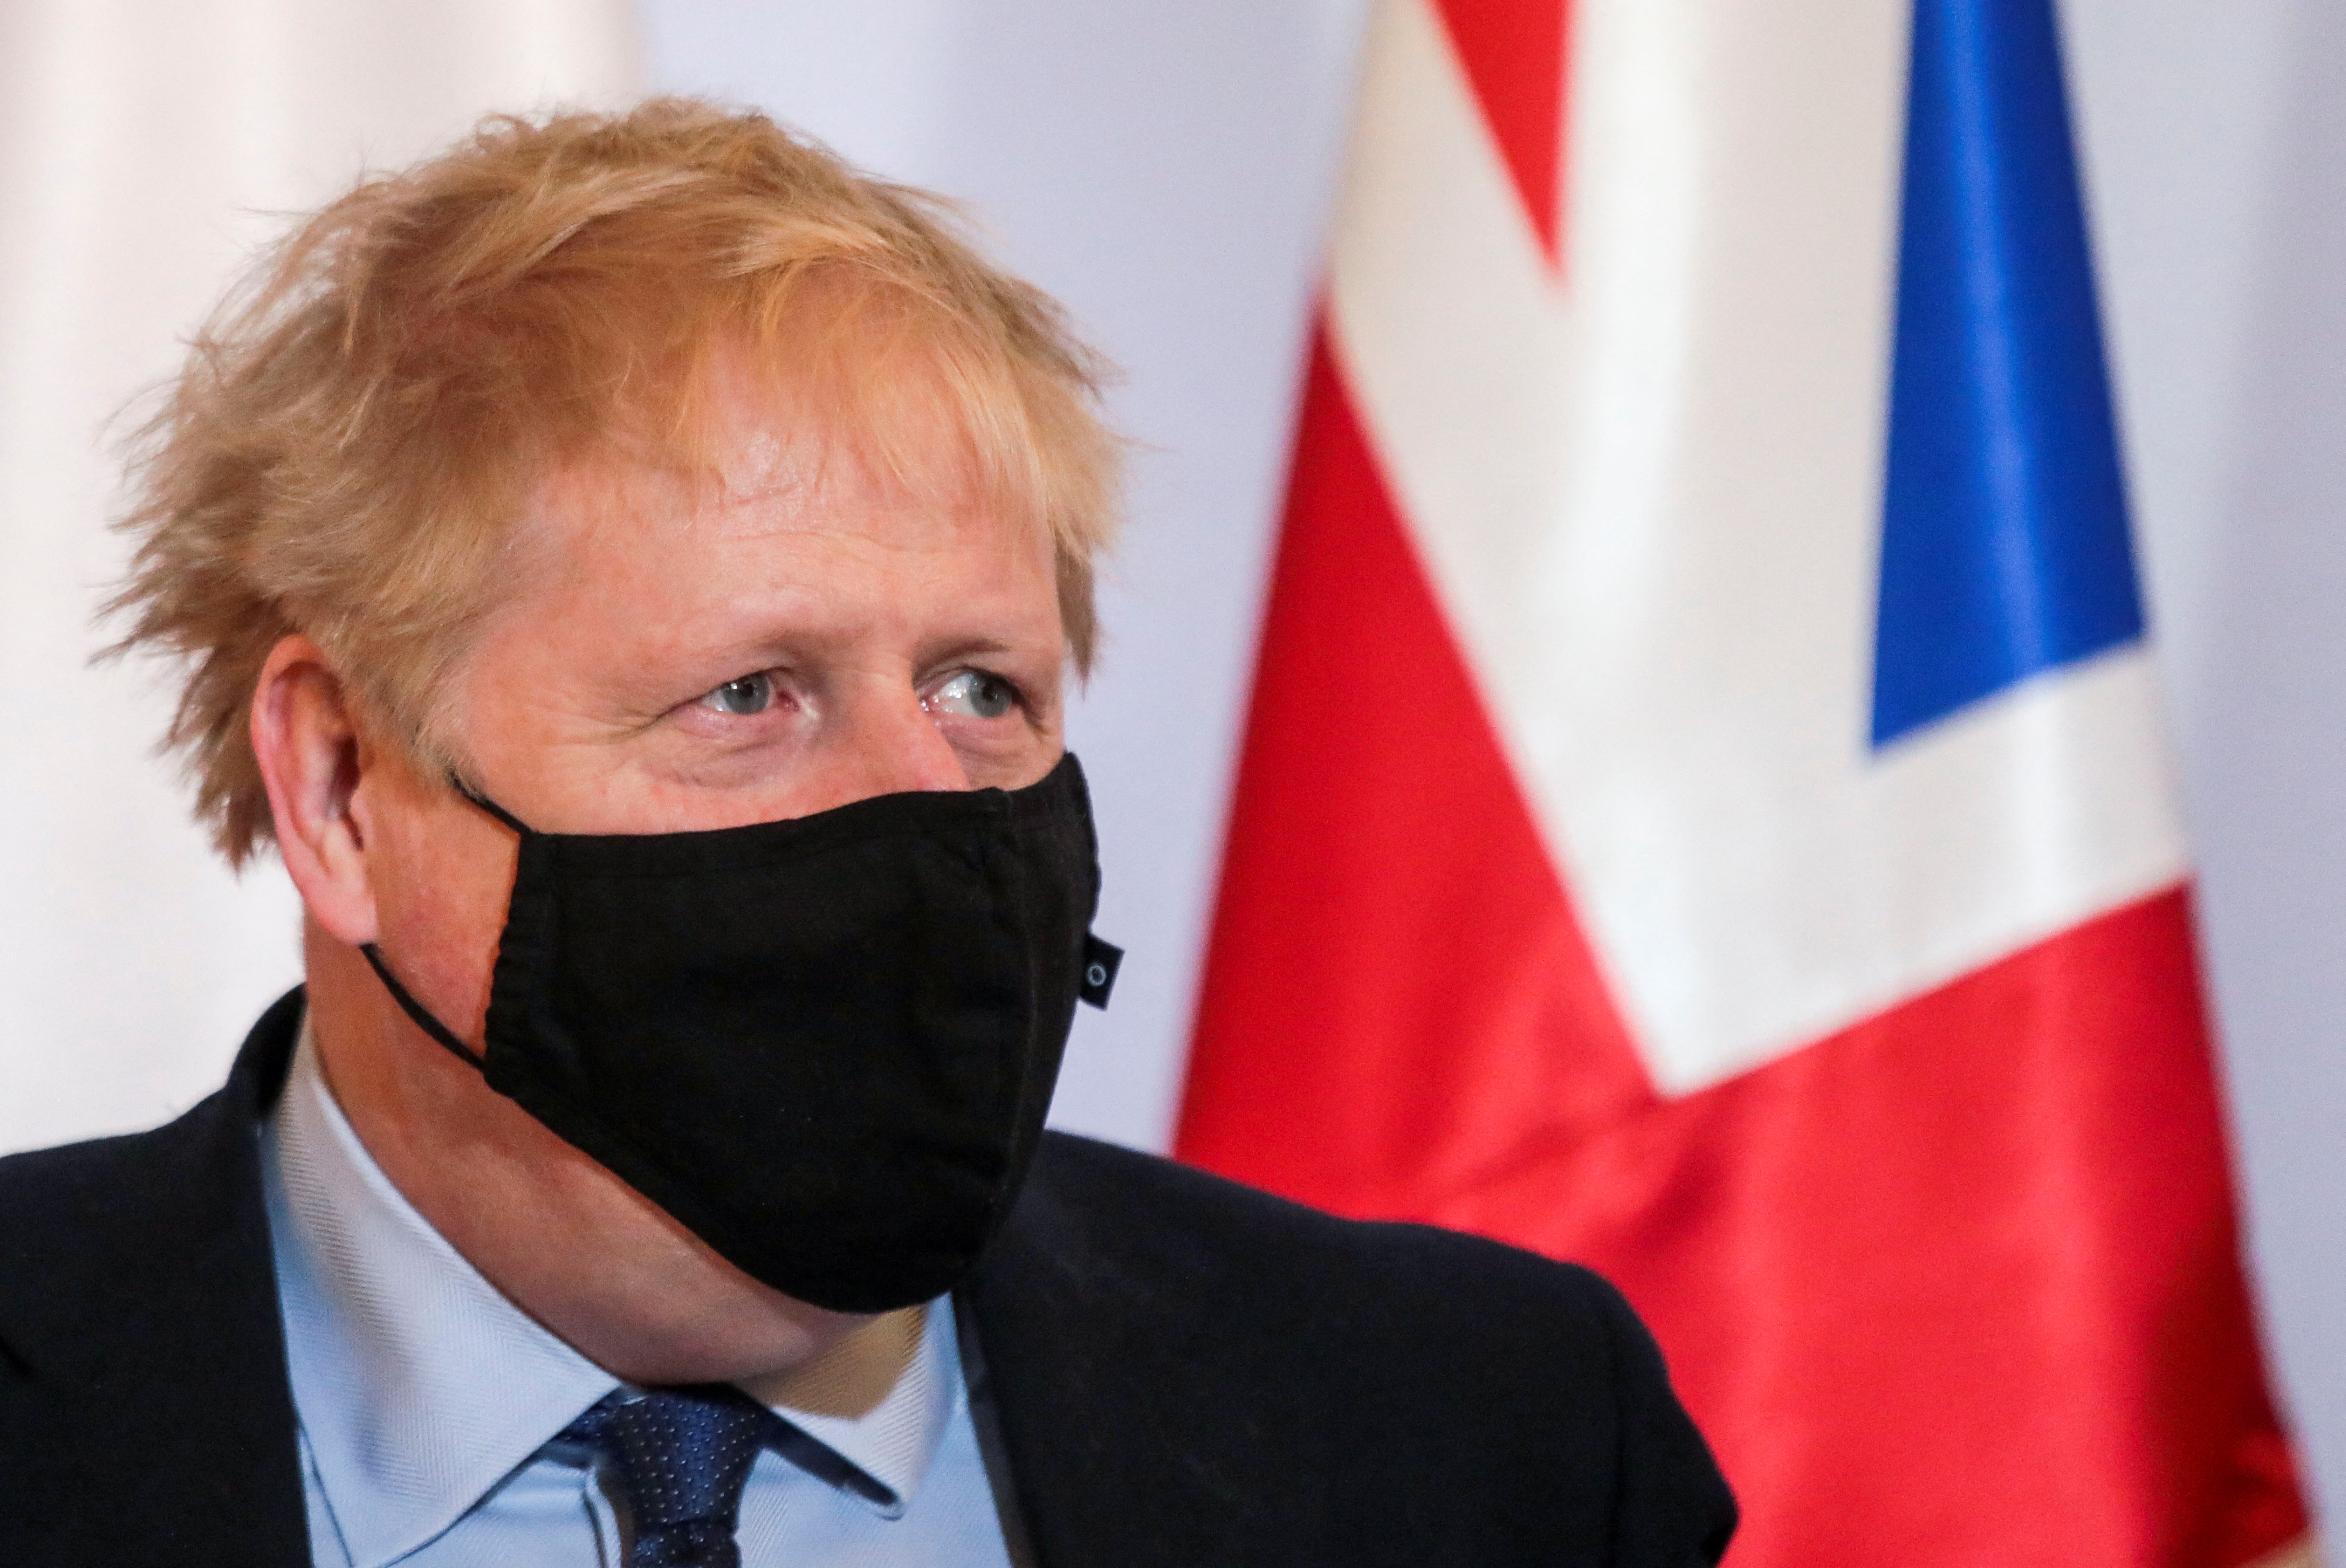 British PM Johnson visits Polish counterpart in Warsaw